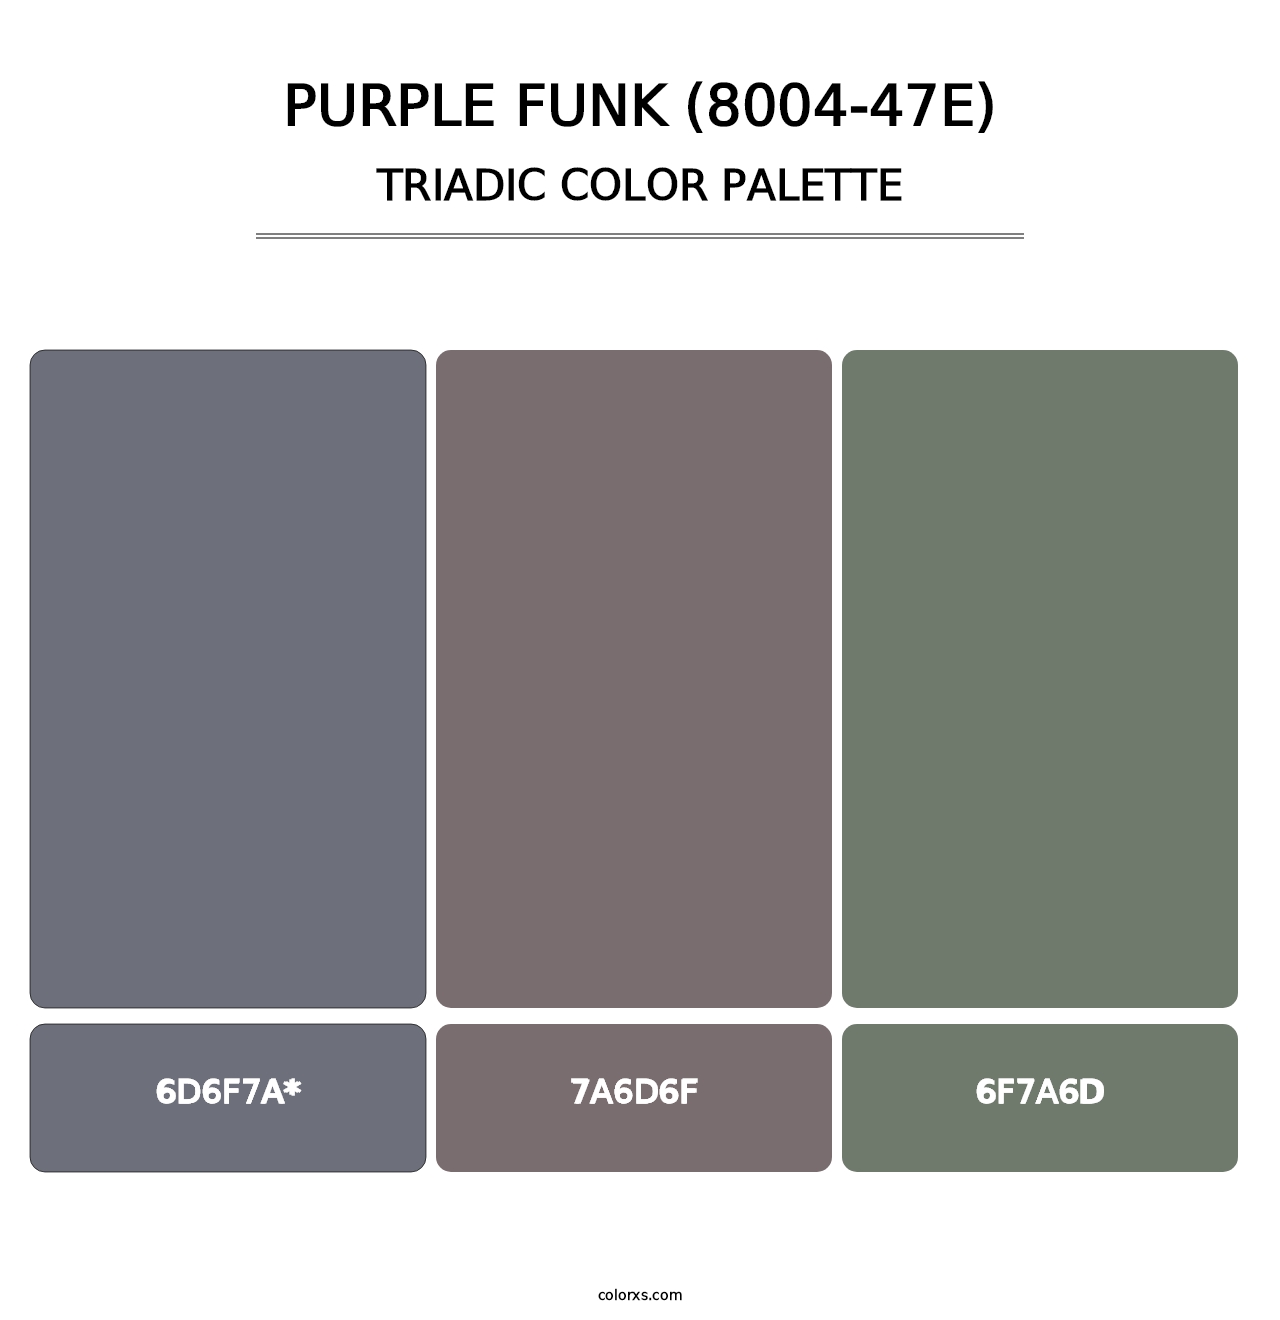 Purple Funk (8004-47E) - Triadic Color Palette